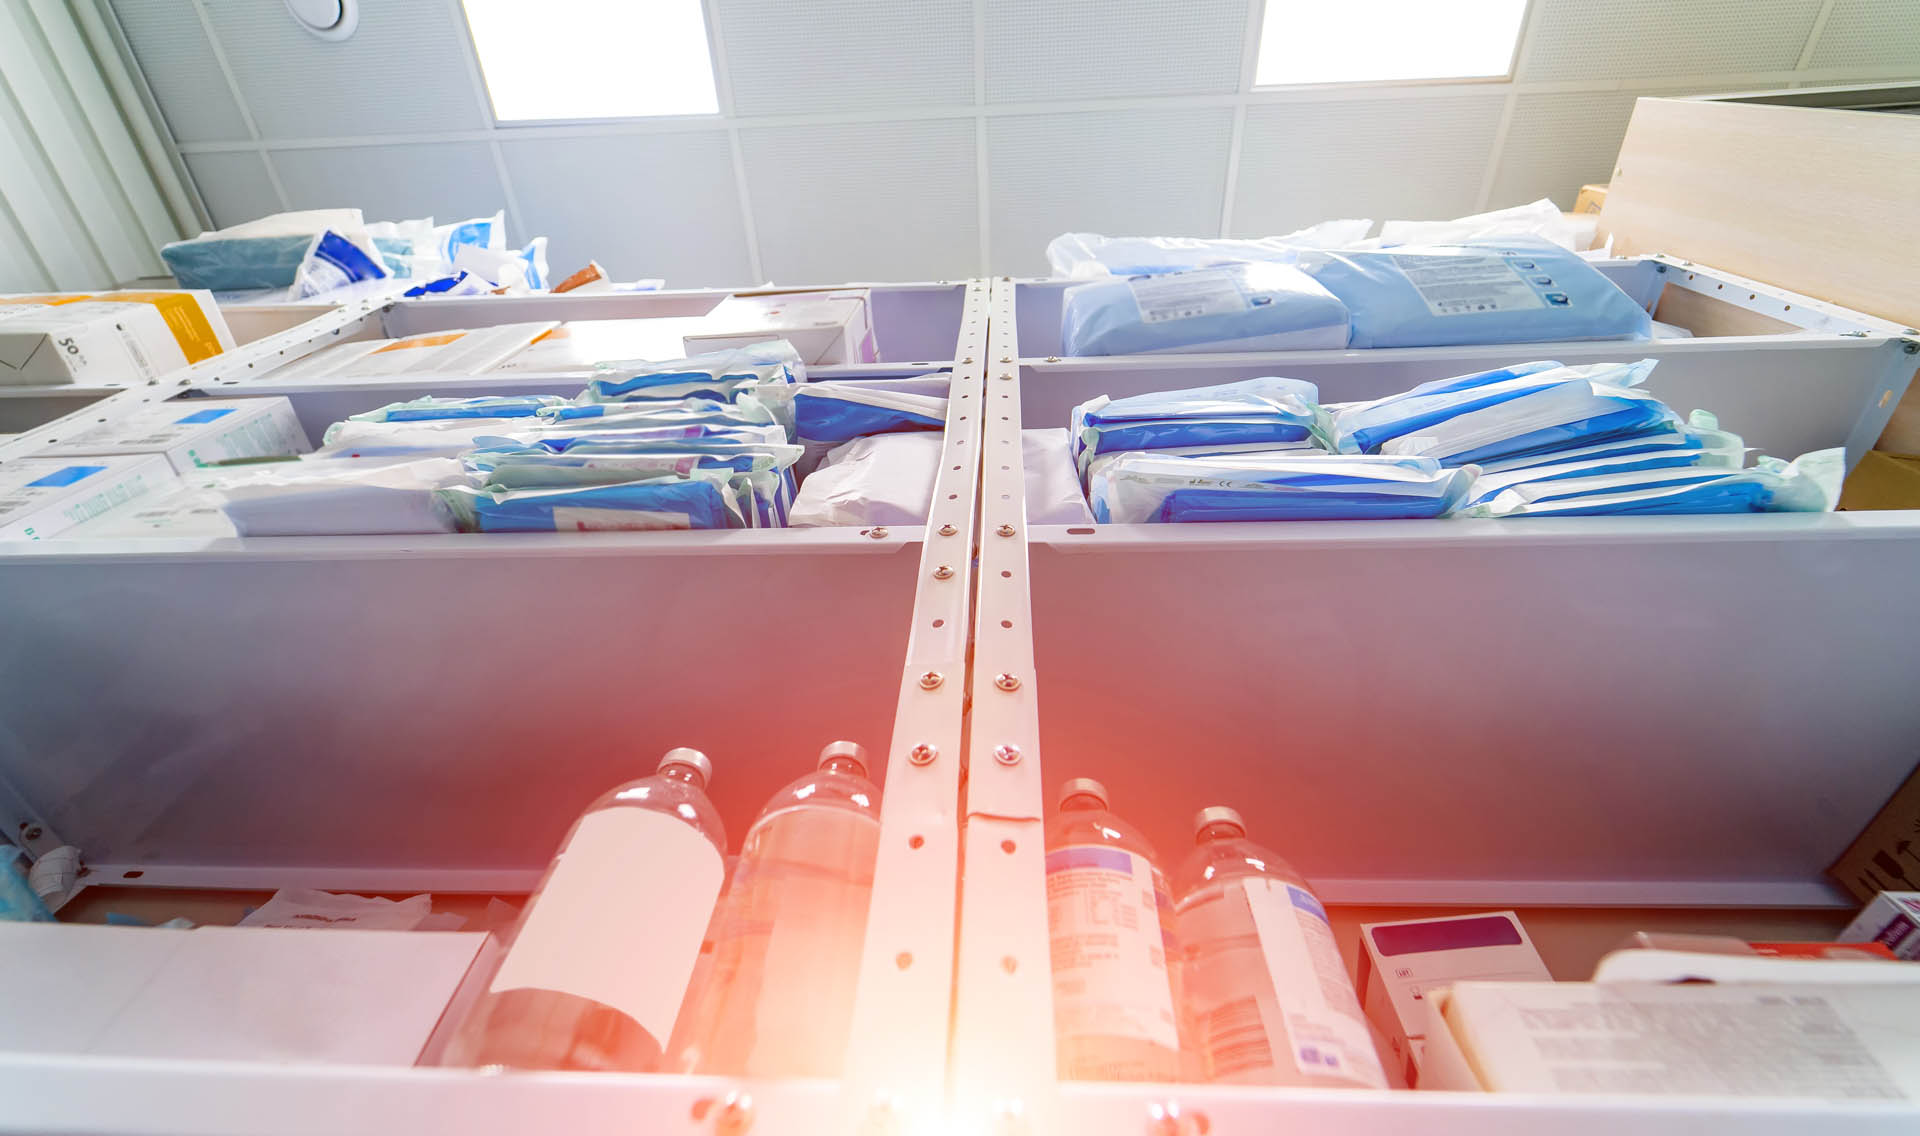 Stocked shelves of medical scrubs in storeroom.